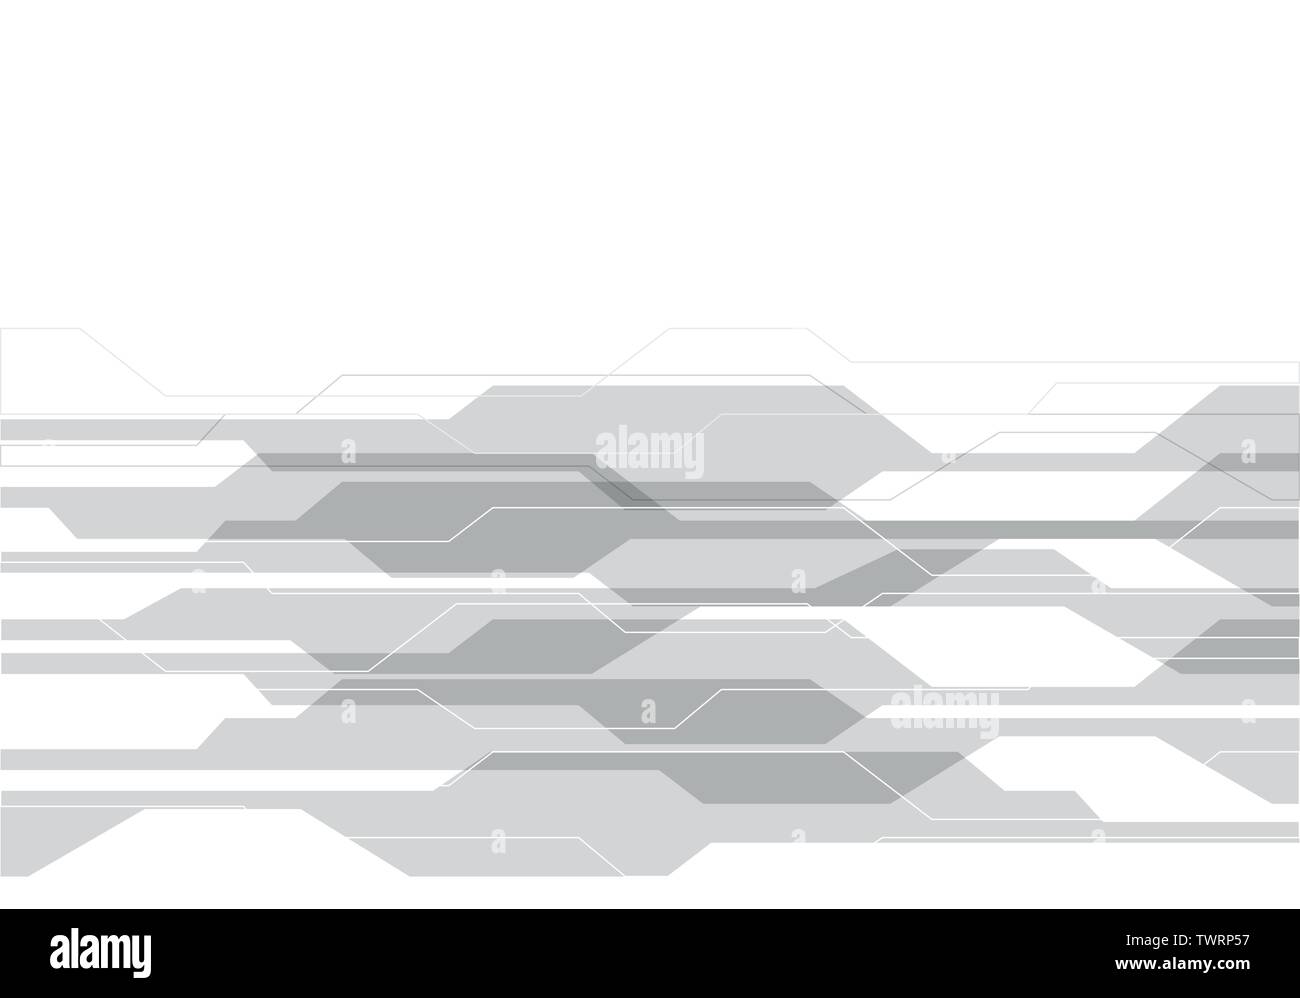 Polygone gris abstrait sur la technologie moderne design blanc futuristic background vector illustration. Illustration de Vecteur